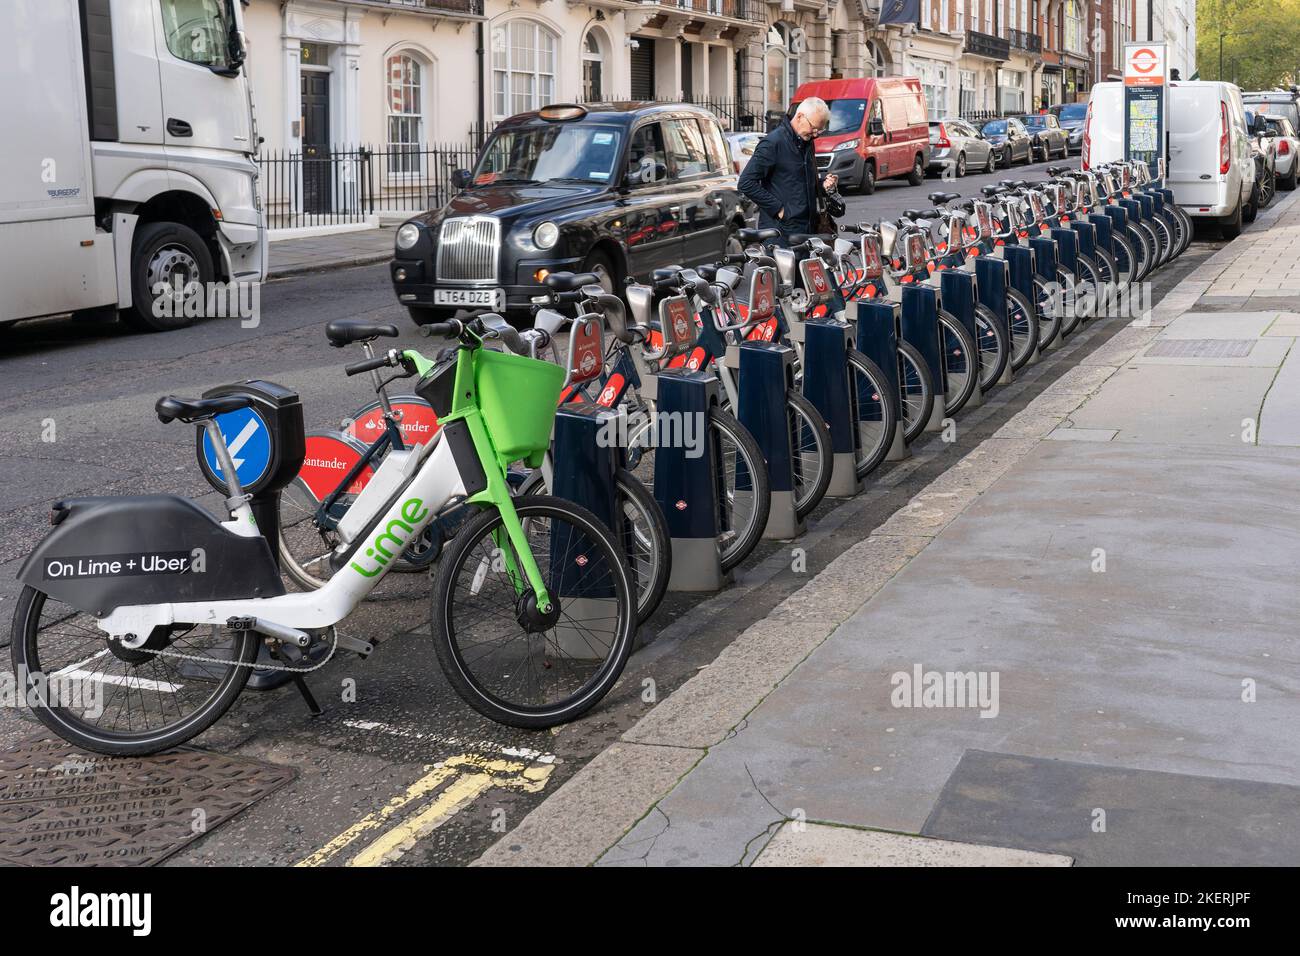 Uber + Lime und Santander sponserten den Verleih von Elektrofahrrädern in London. Ein Radfahrer pflückt sich ein Fahrrad, während ein Taxi vorbeifährt. England Stockfoto